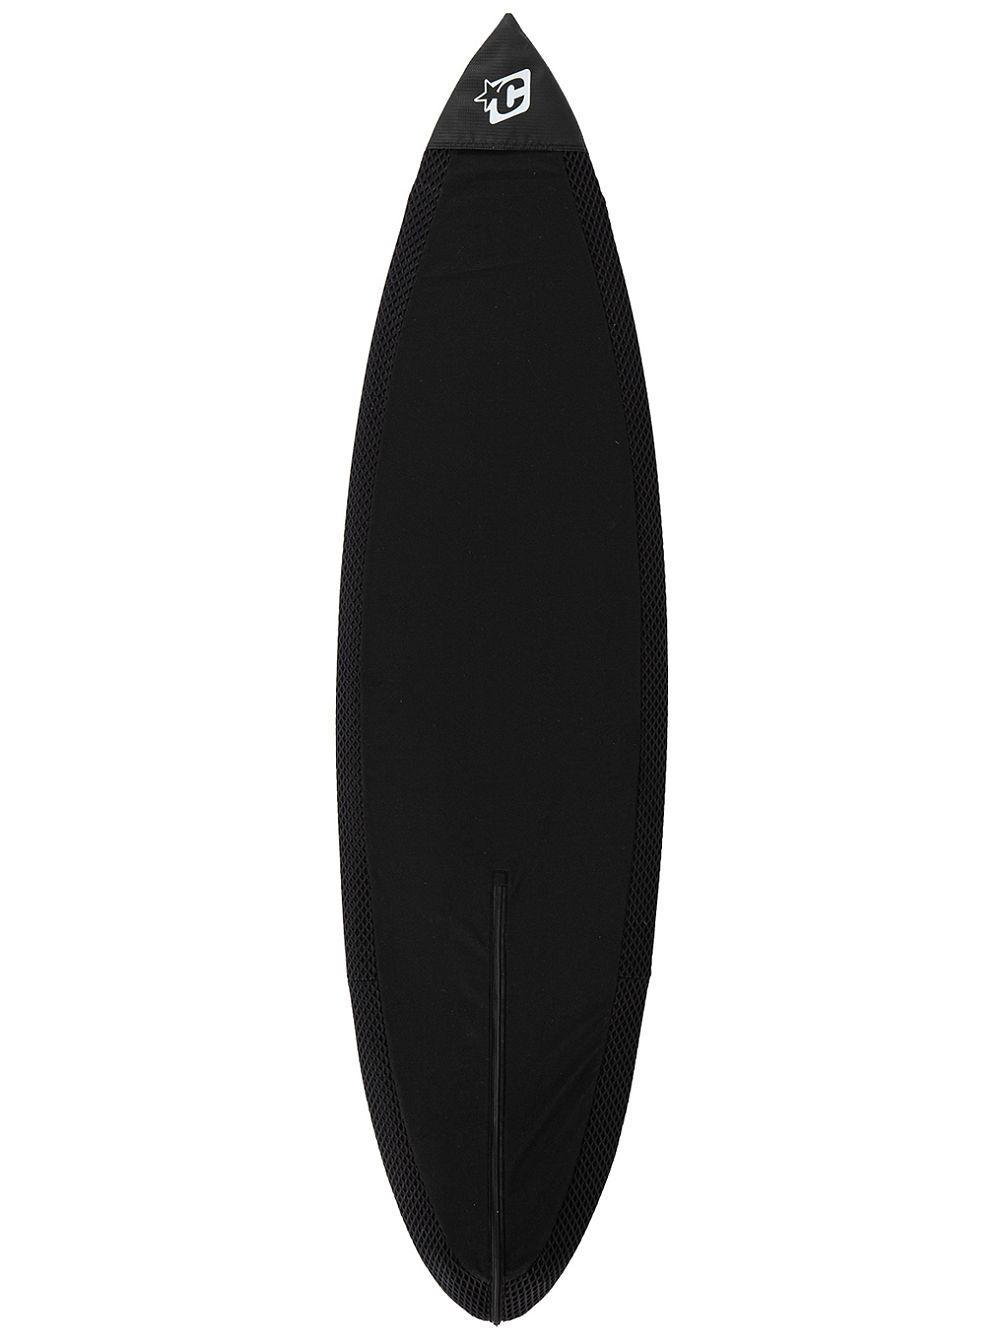 Shortboard Aero Light Sox 5&amp;#039;8 Surfboard tas